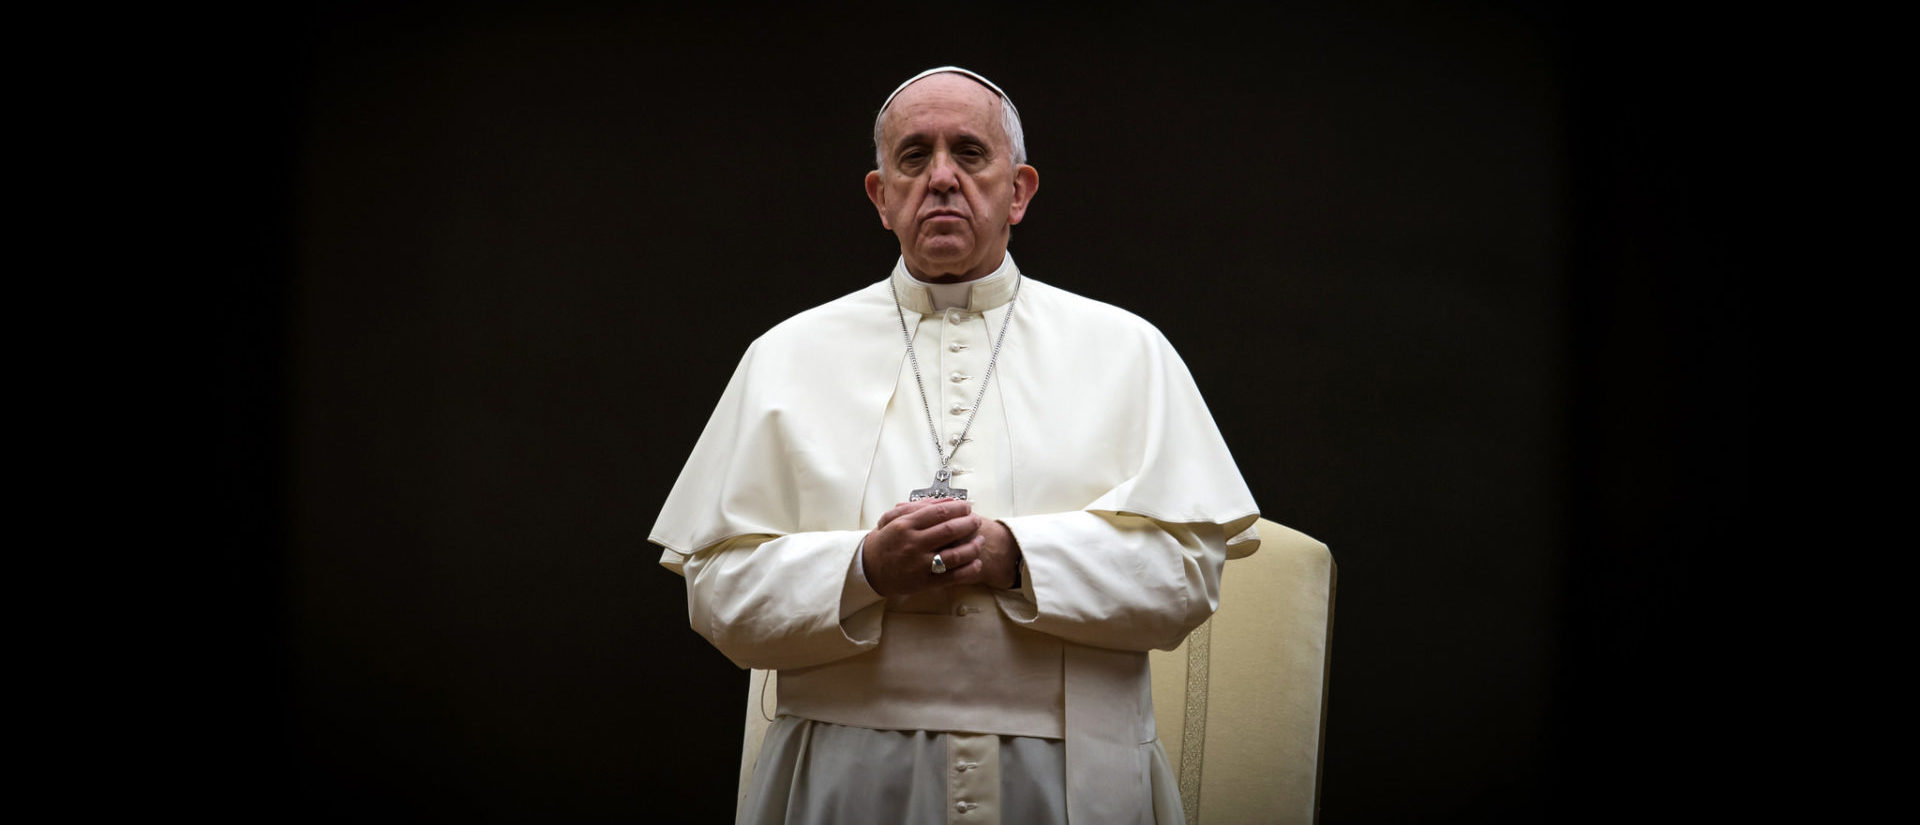 La lettre envoyée par les experts de l'ONU demande au Vatican de "cesser l'obstruction envers la justice dans les affaires d'abus sexuels sur mineurs | © Flickr/catholicisme